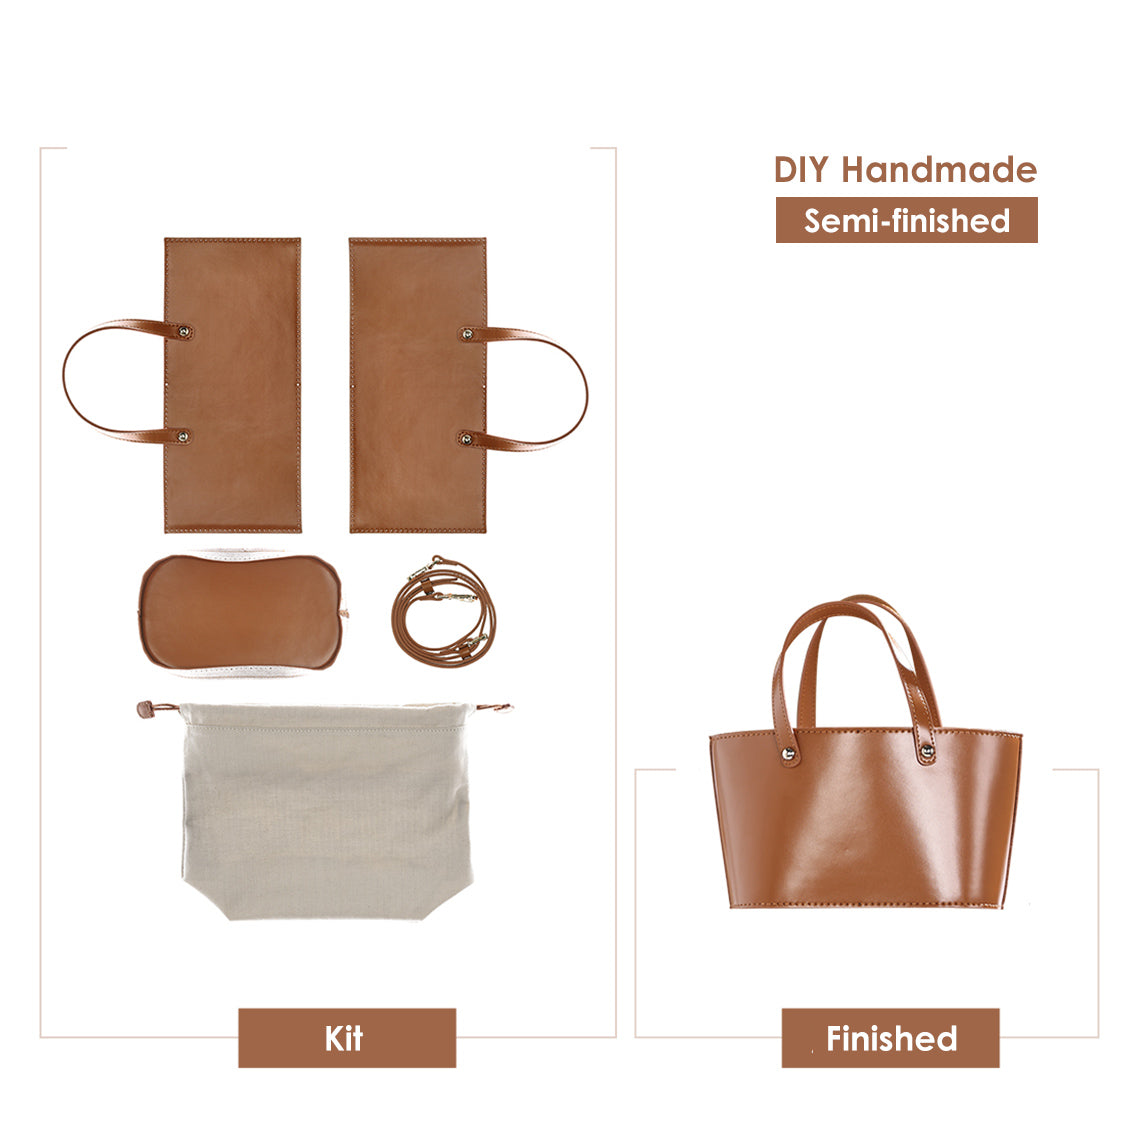 DIY Leather Bag Kit | Make Your Own Handbag DIY Kit - POPSEWING™